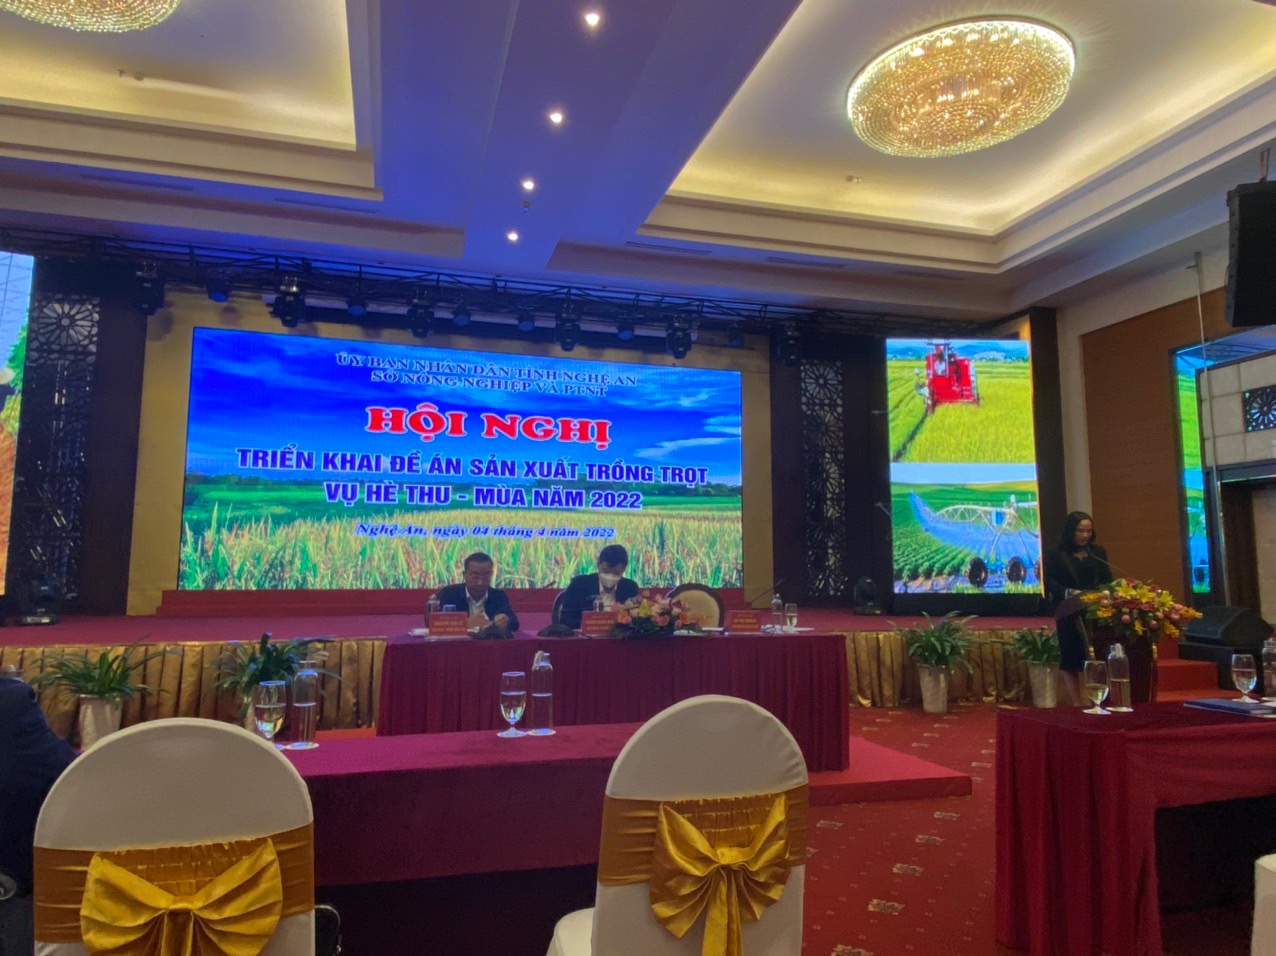 Sở Nông nghiệp và PTNT Nghệ An: Tổ chức Hội nghị triển khai Đề án sản xuất trồng trọt vụ Hè Thu, Mùa năm 2022  